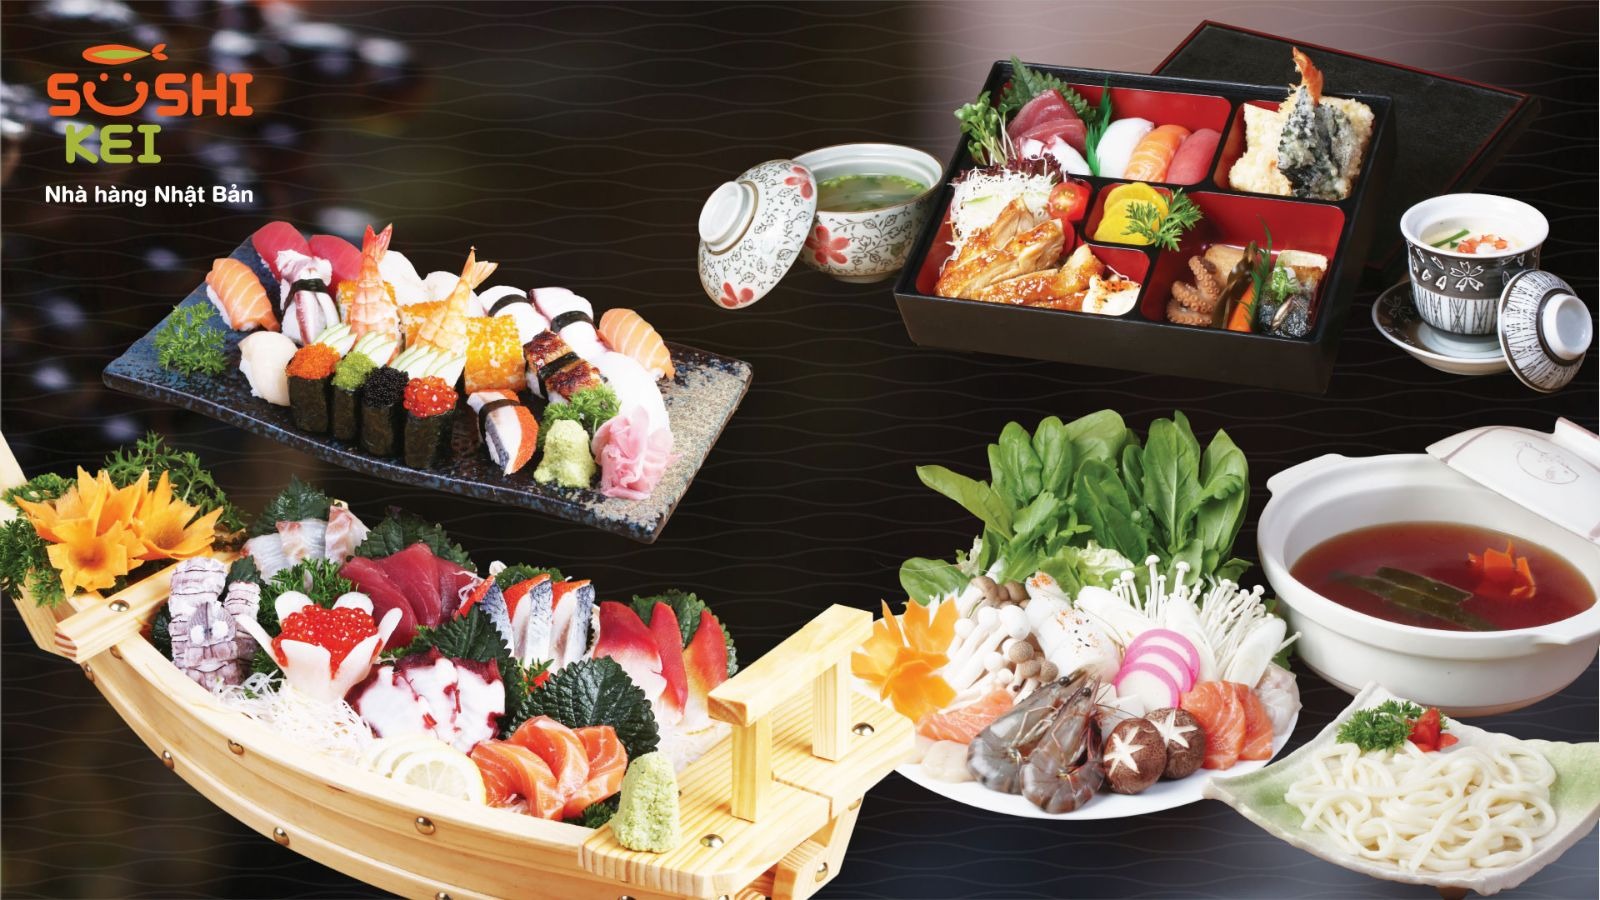 sushi kei - các chuỗi nhà hàng của redsun